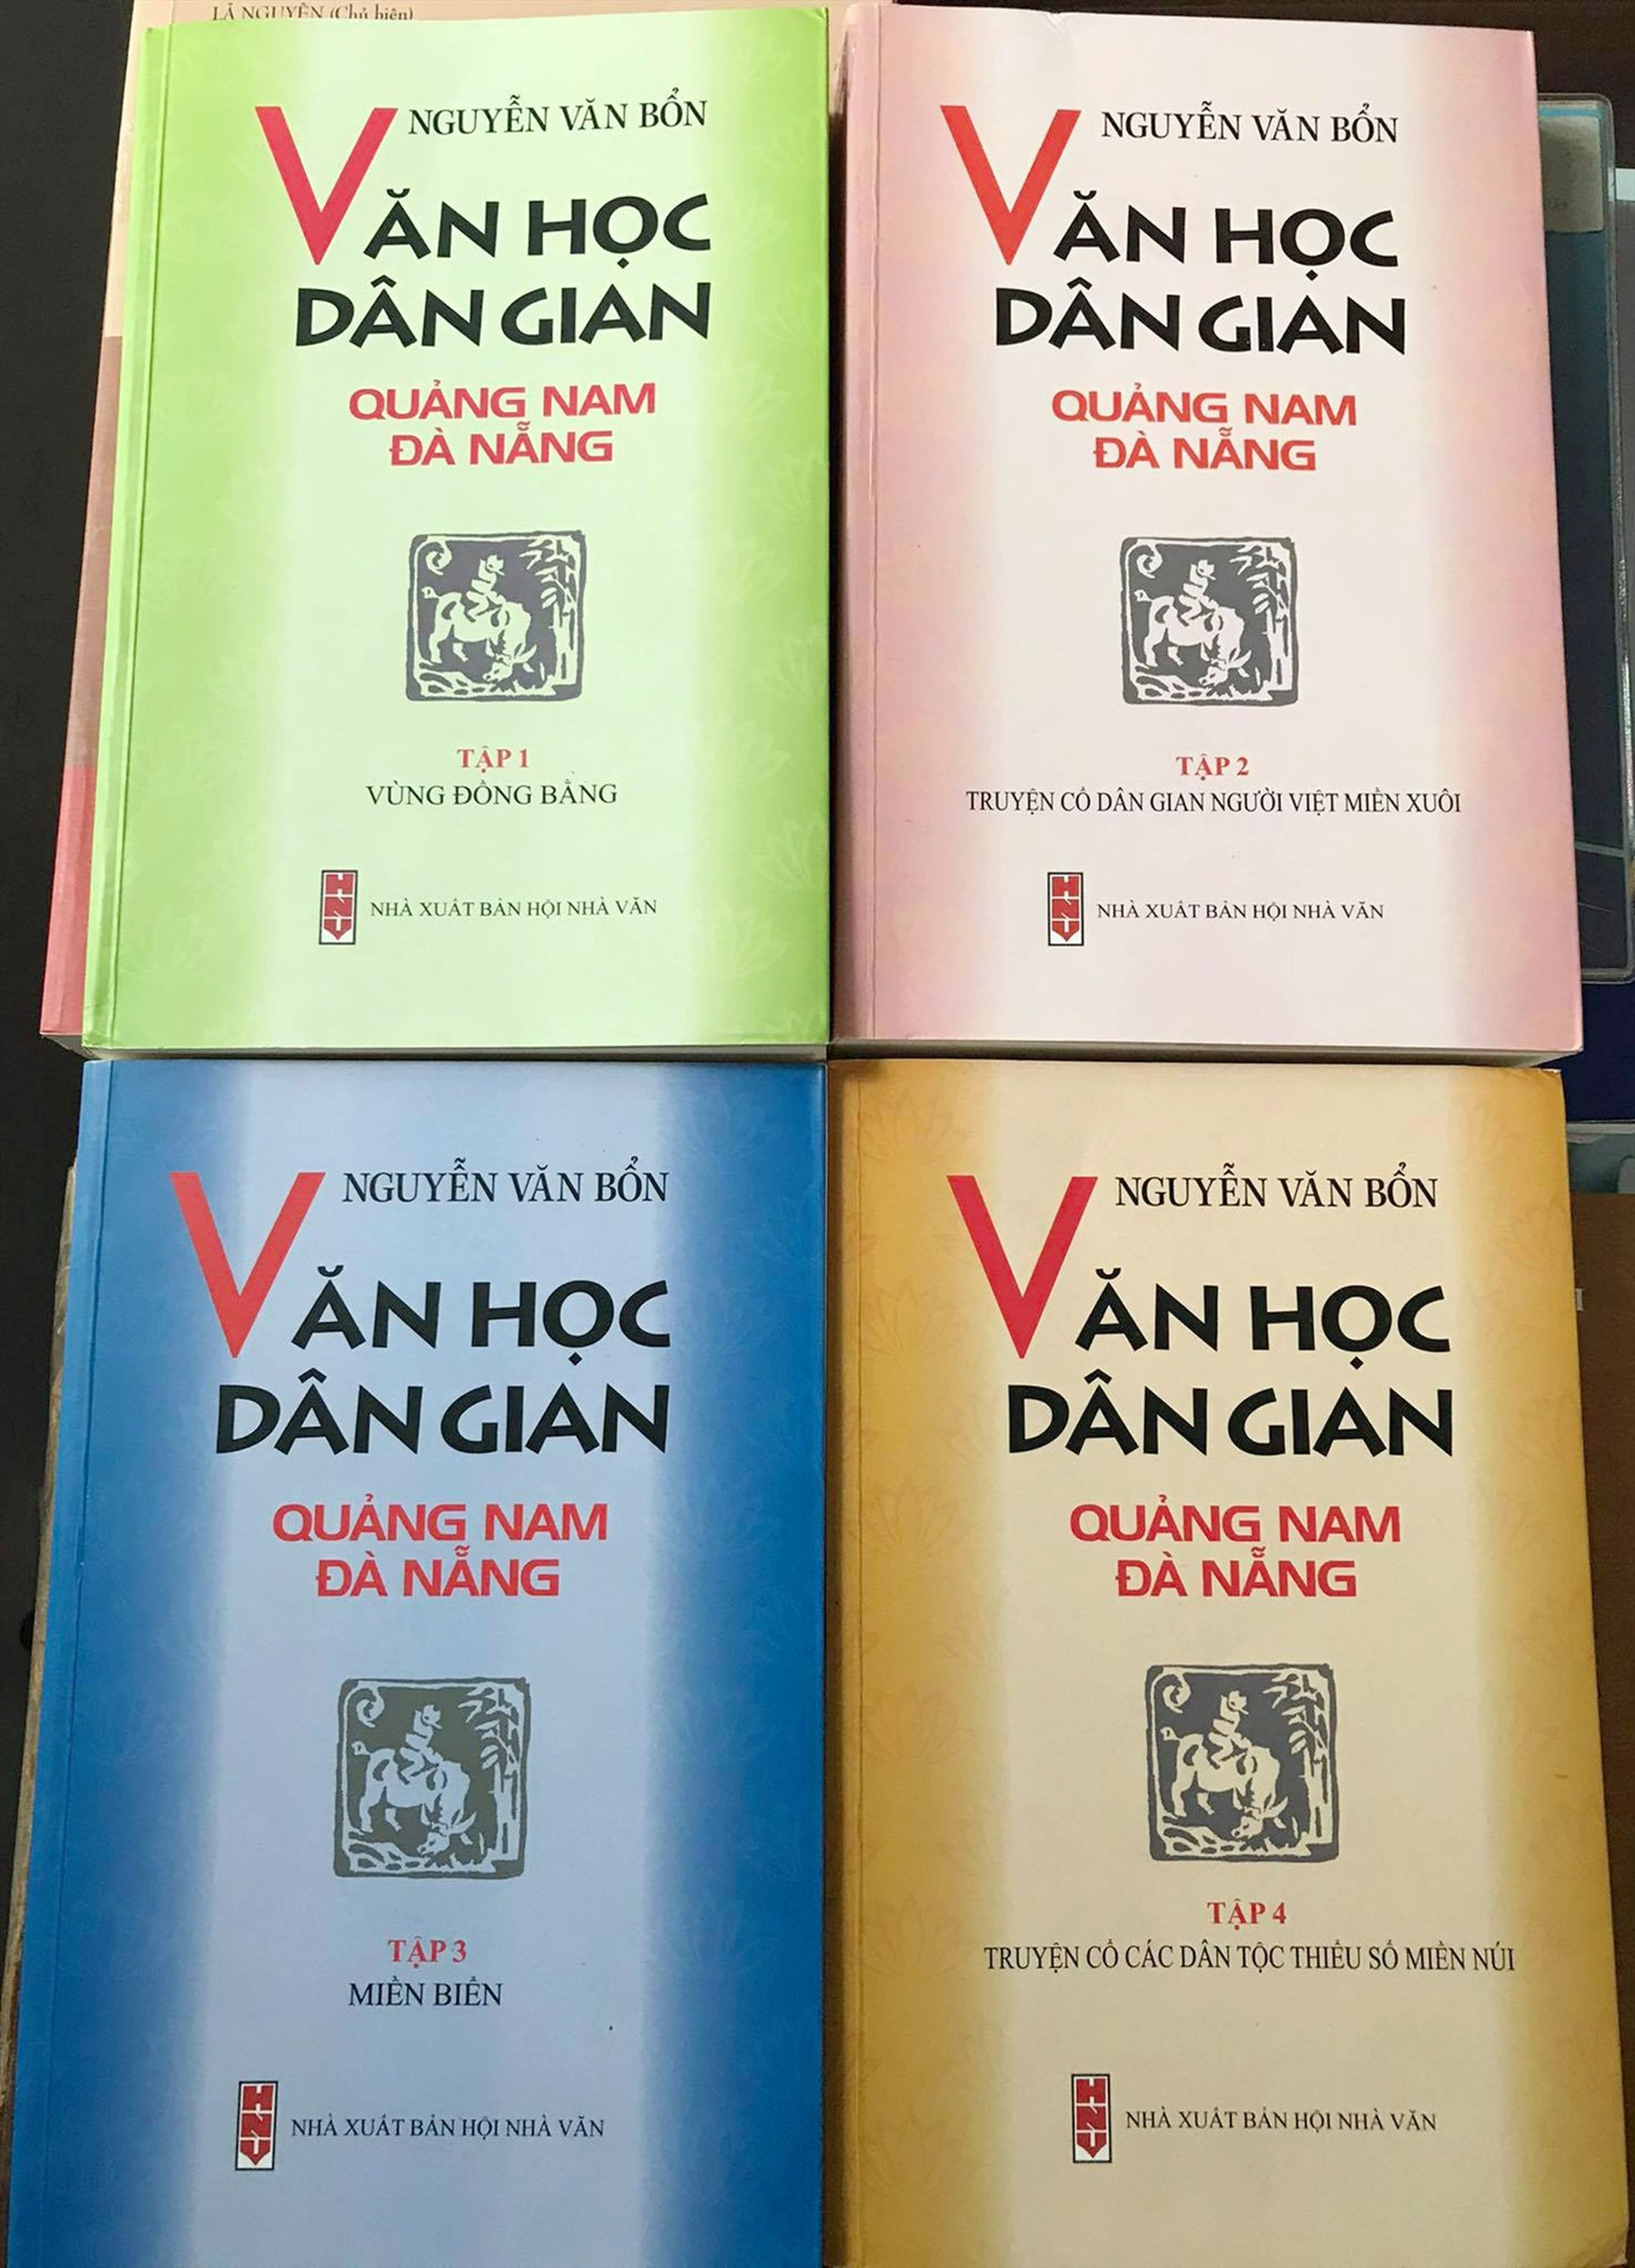 Bộ “Văn học dân gian Quảng Nam-Đà Nẵng” (4 tập) do Nguyễn Văn Bổn sưu tầm, biên khảo là một trong những công trình nghiên cứu tiêu biểu về văn học dân gian Quảng Nam.